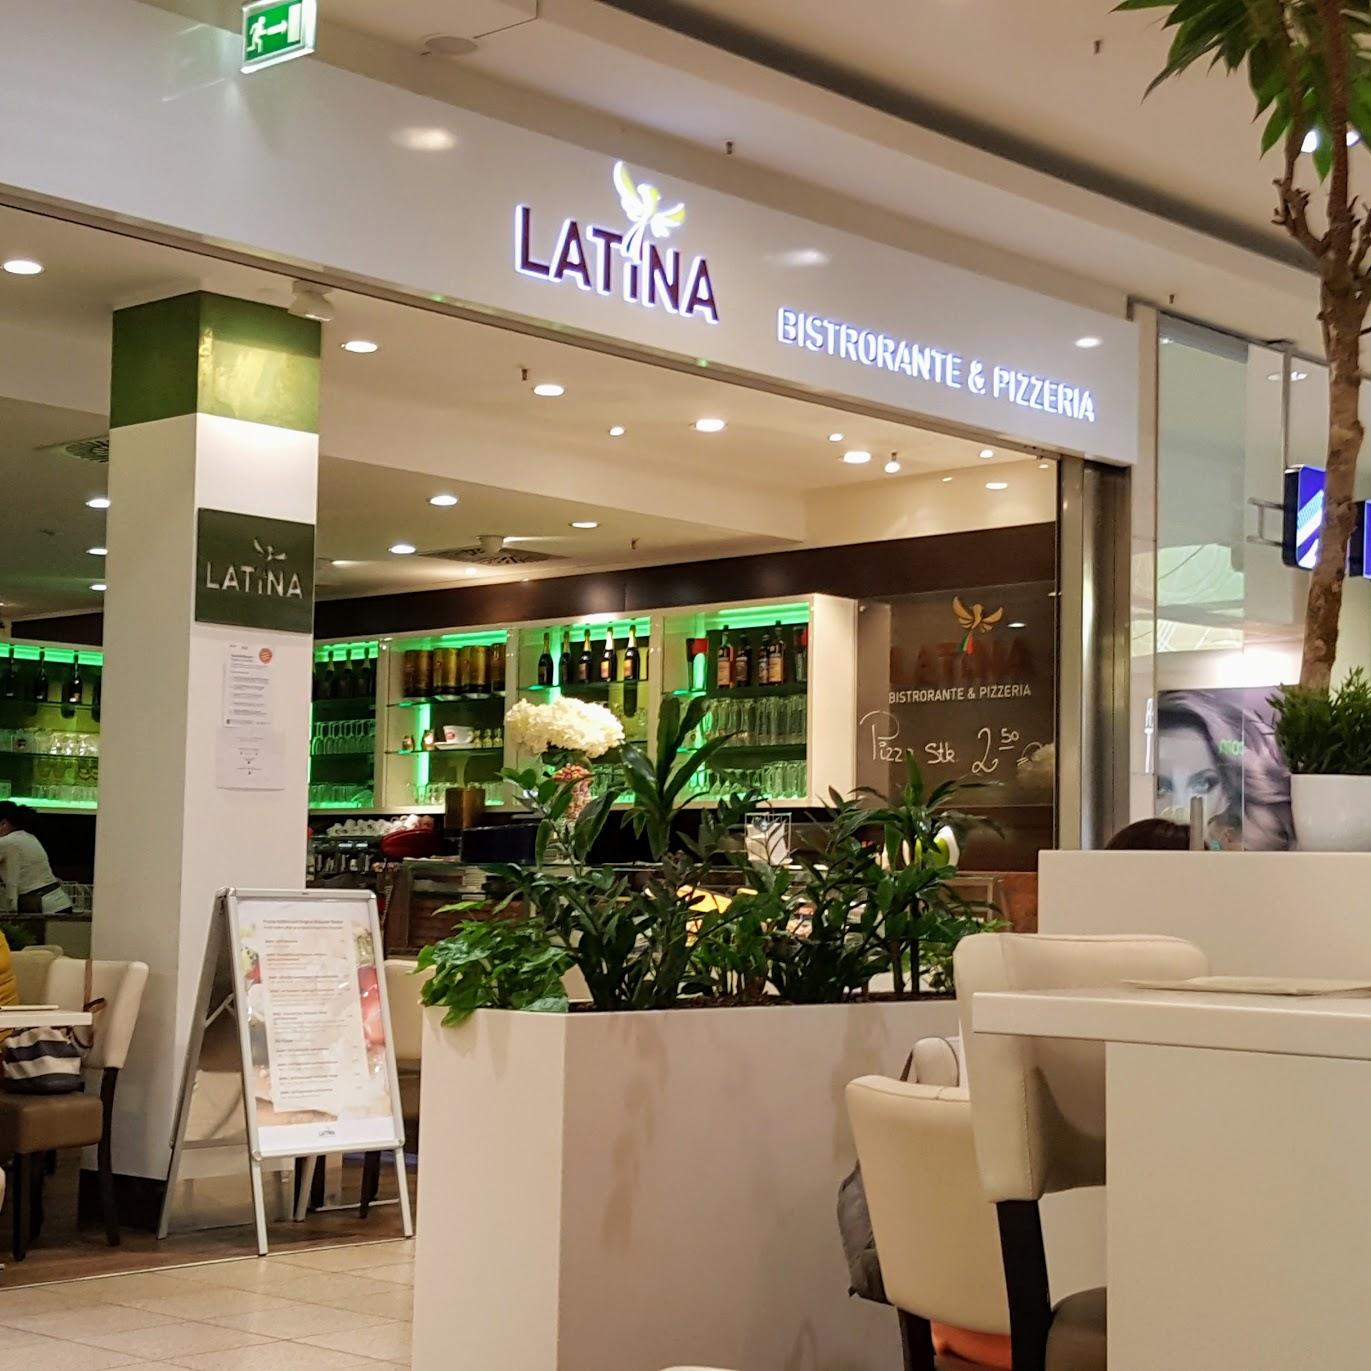 Restaurant "Latina Pizzeria und Eiscafé" in Wetzlar